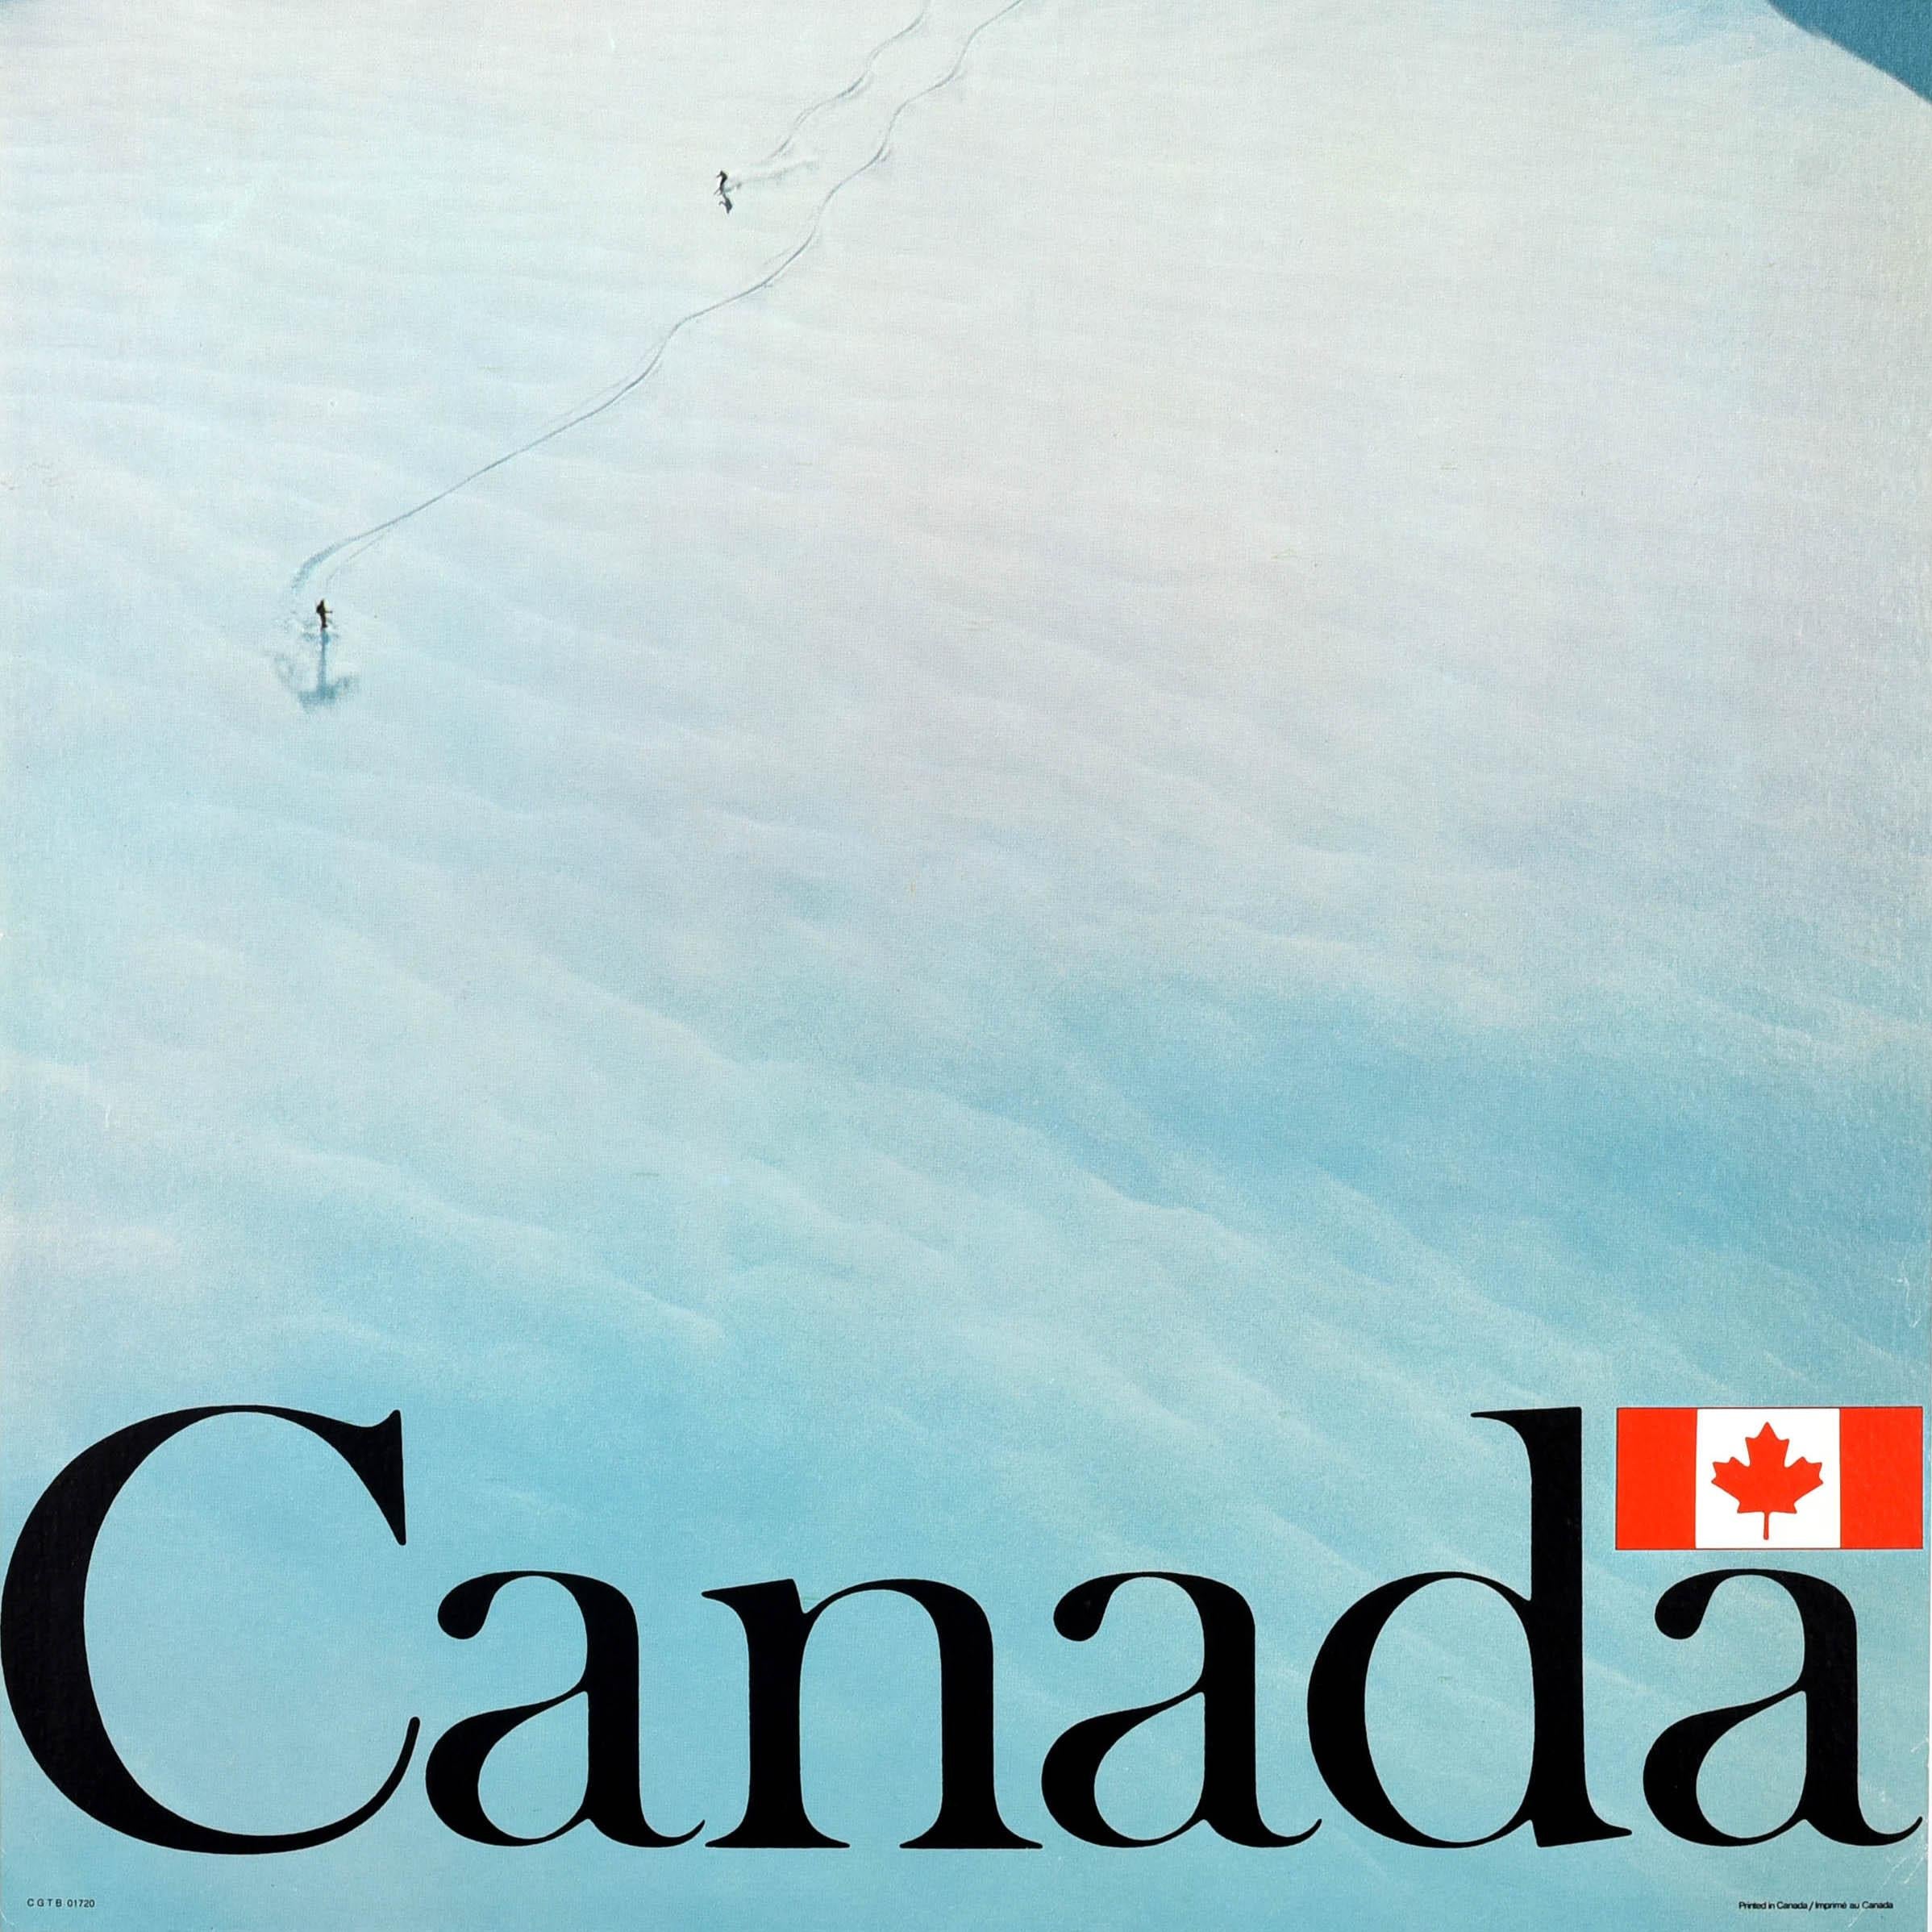 Affiche originale de voyage de ski vintage pour le Canada représentant des skieurs dévalant une pente de montagne en laissant des traces dans la neige derrière eux, le lettrage noir gras avec la feuille d'érable du drapeau canadien au-dessus du